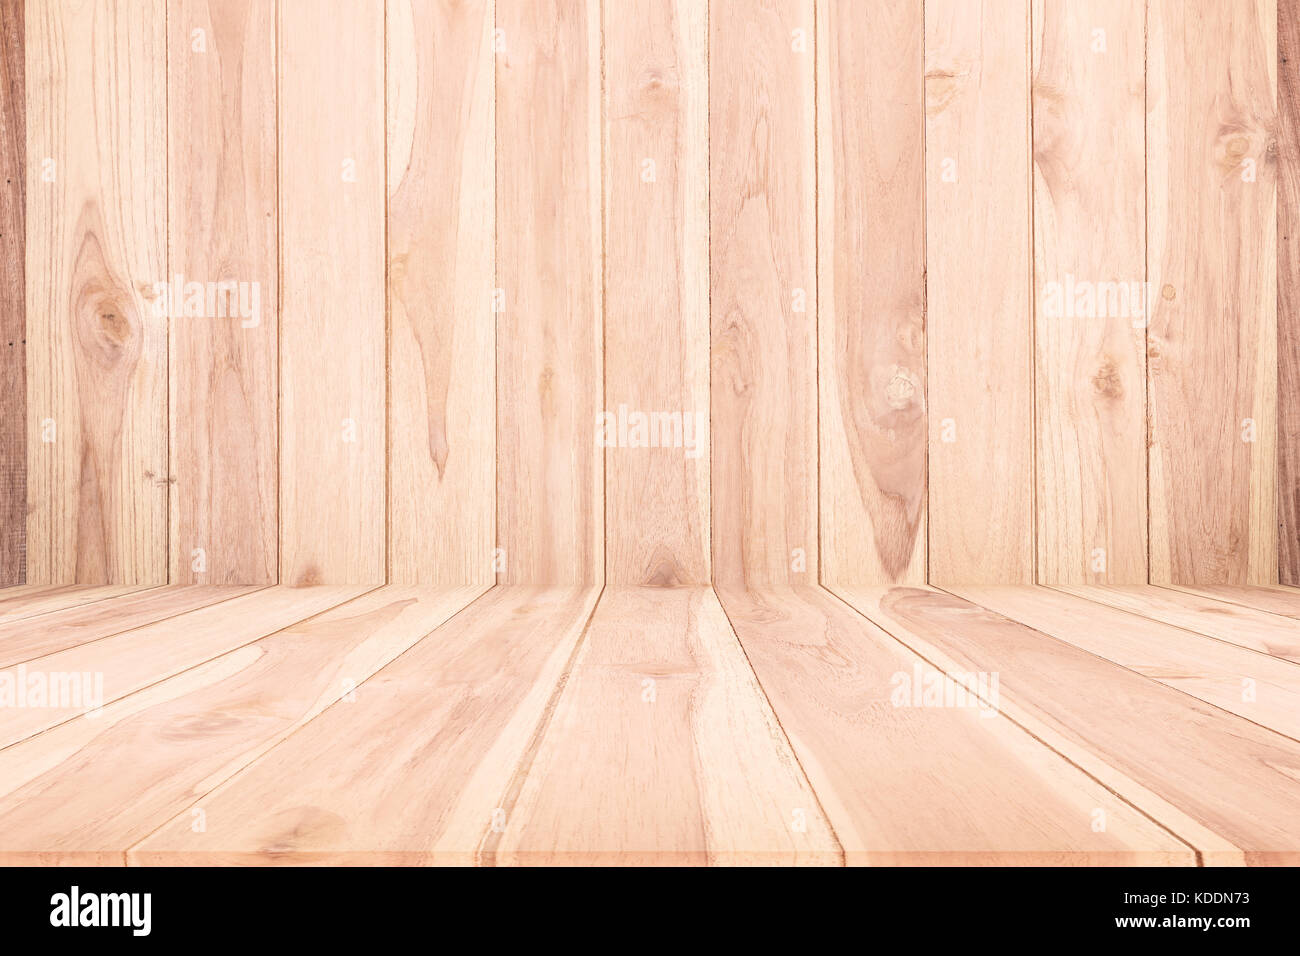 Fondo de textura de madera, piso de madera de pared de madera de agente para el diseño Foto de stock